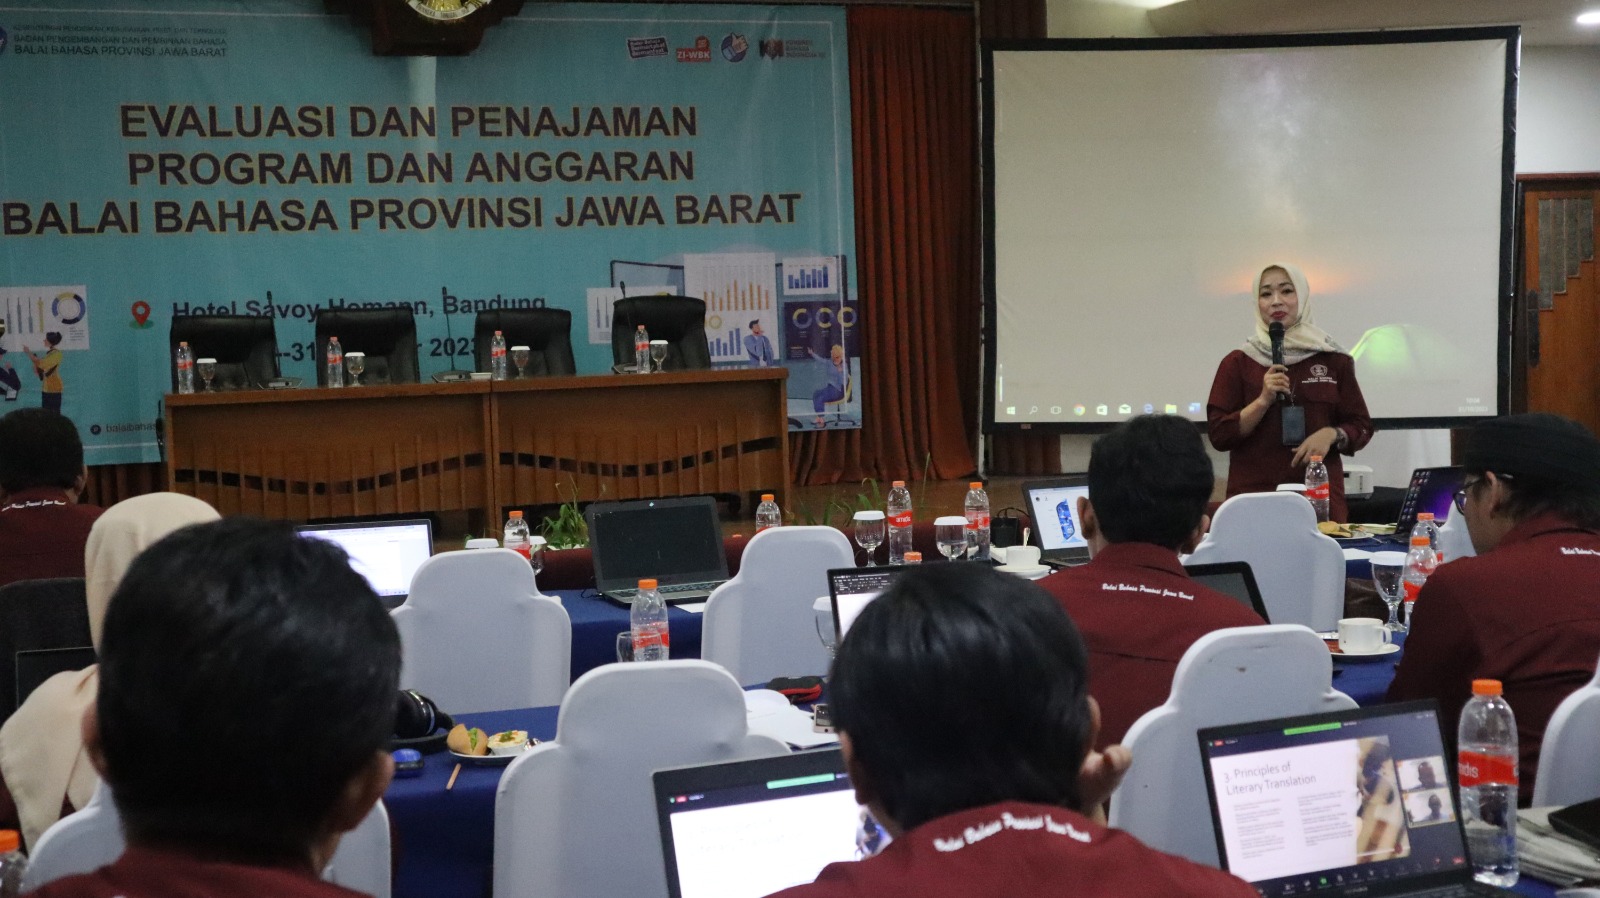 Evaluasi dan Penajaman Program dan Anggaran Balai Bahasa Provinsi Jawa Barat